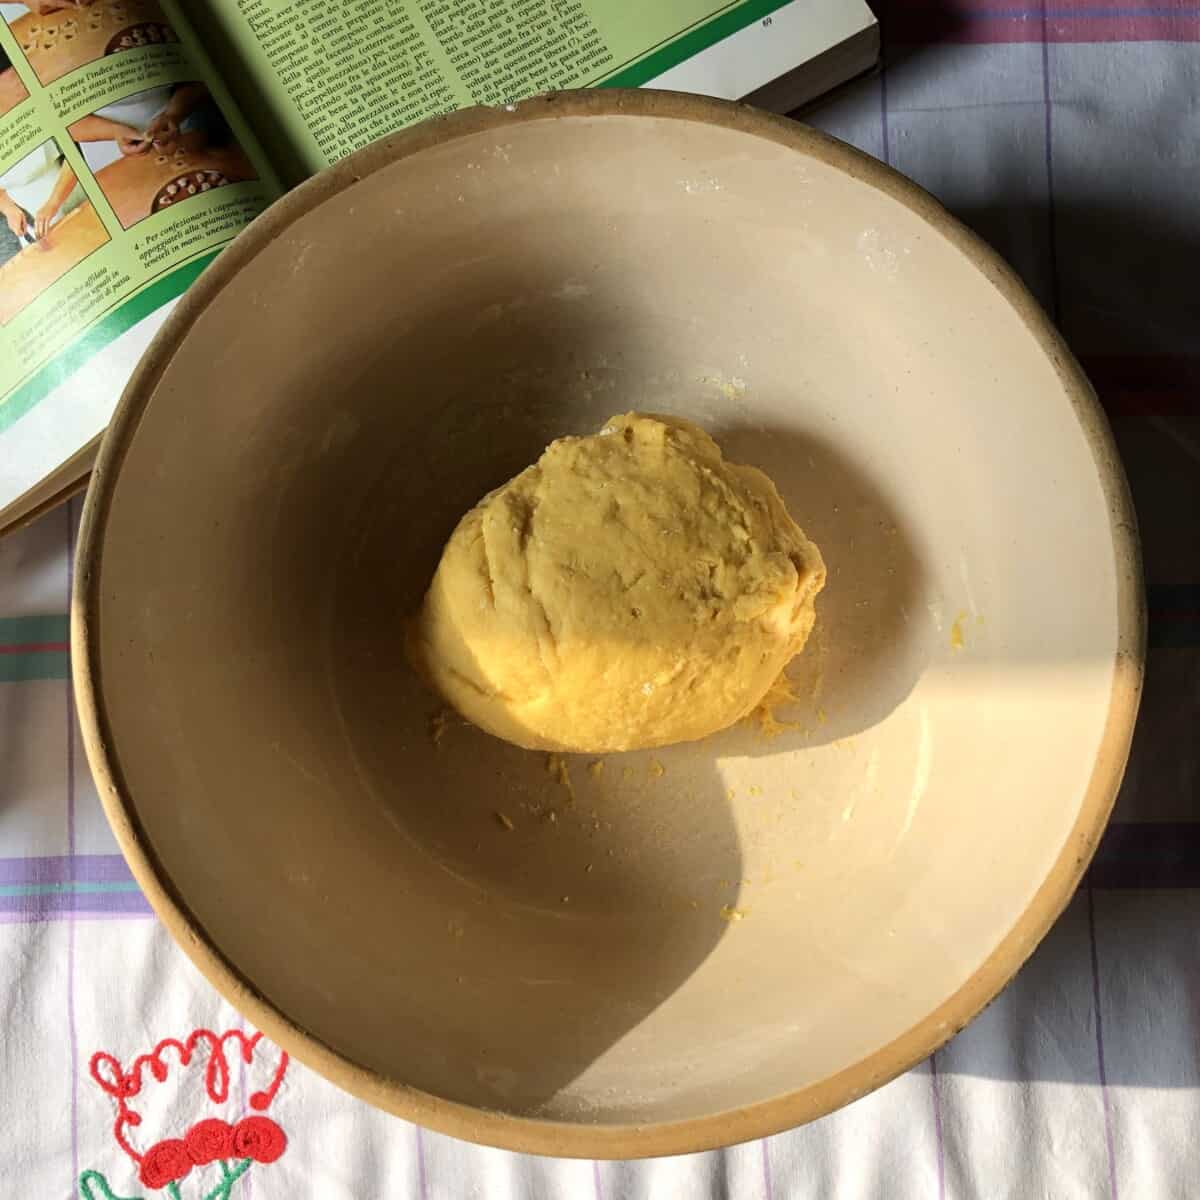 a shaggy ball of homemade egg pasta dough in a bread bowl